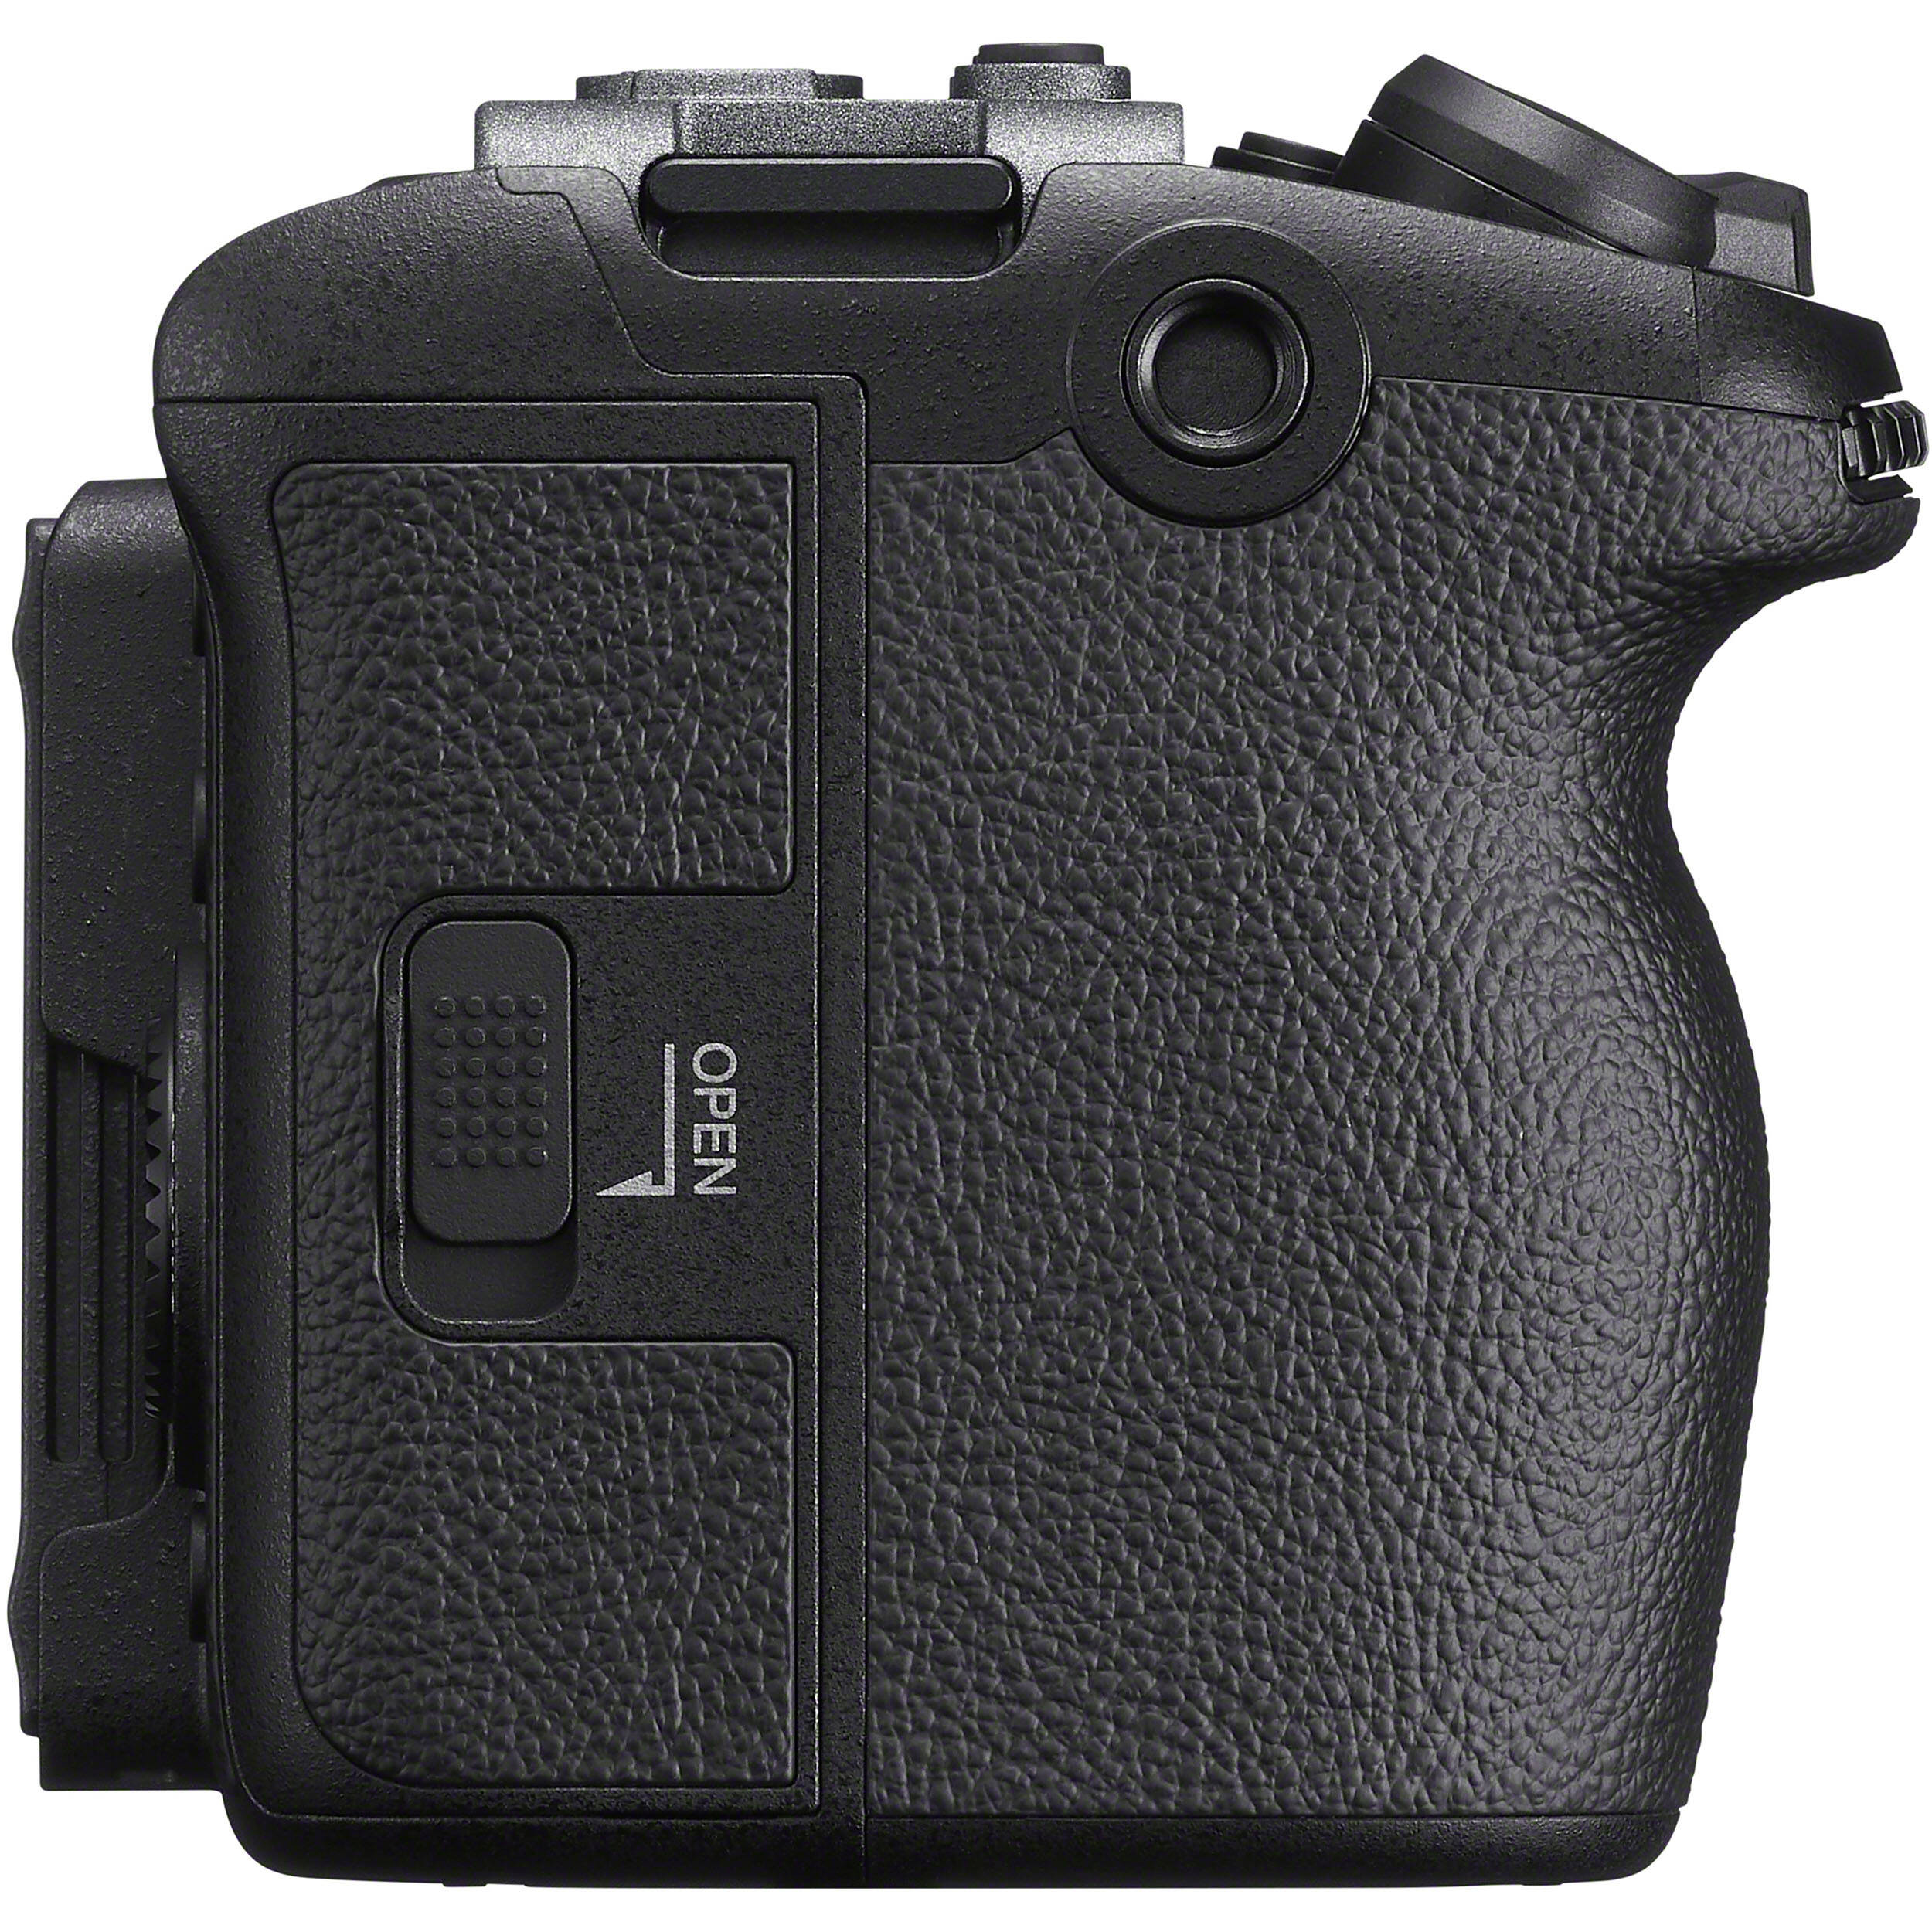 Caméra de cinéma numérique Sony FX30 avec unité de poignée XLR